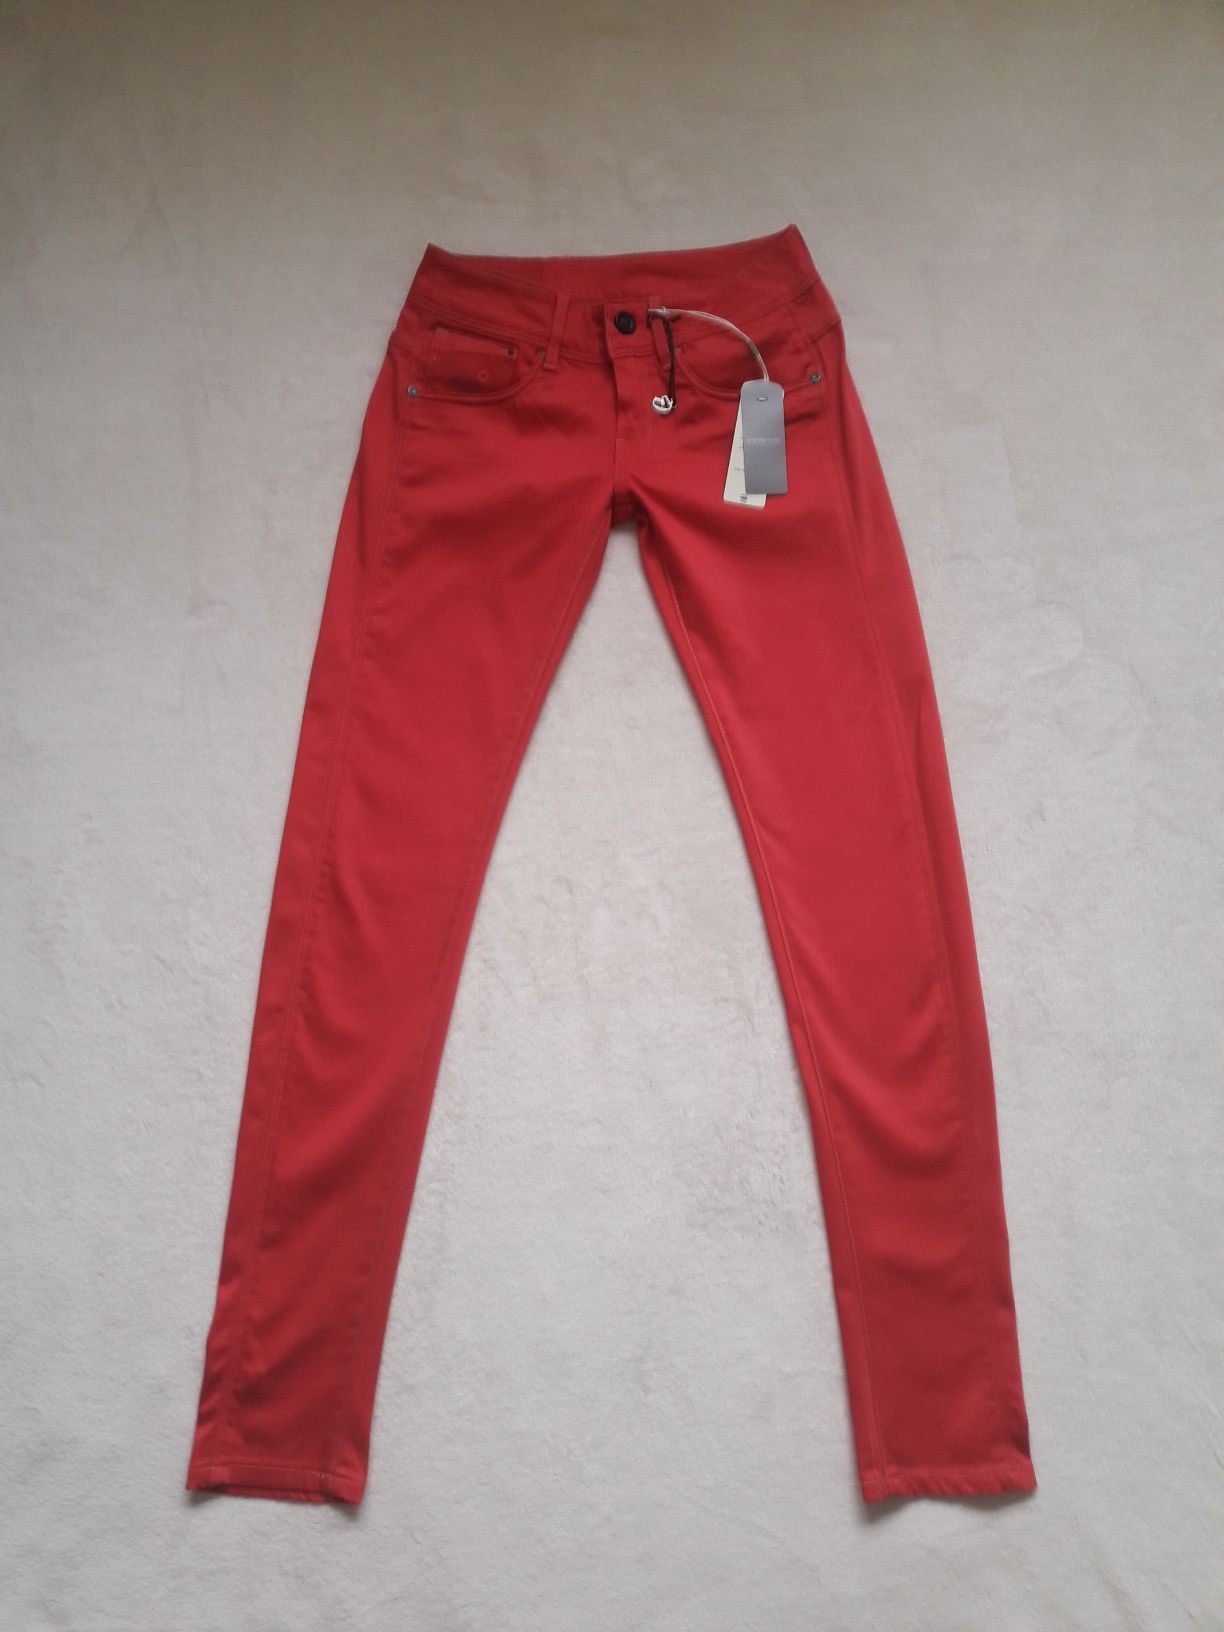 134.Nowe W26L32 r.S spodnie a'la jeans G-STAR bordowe/czerwone. jeans